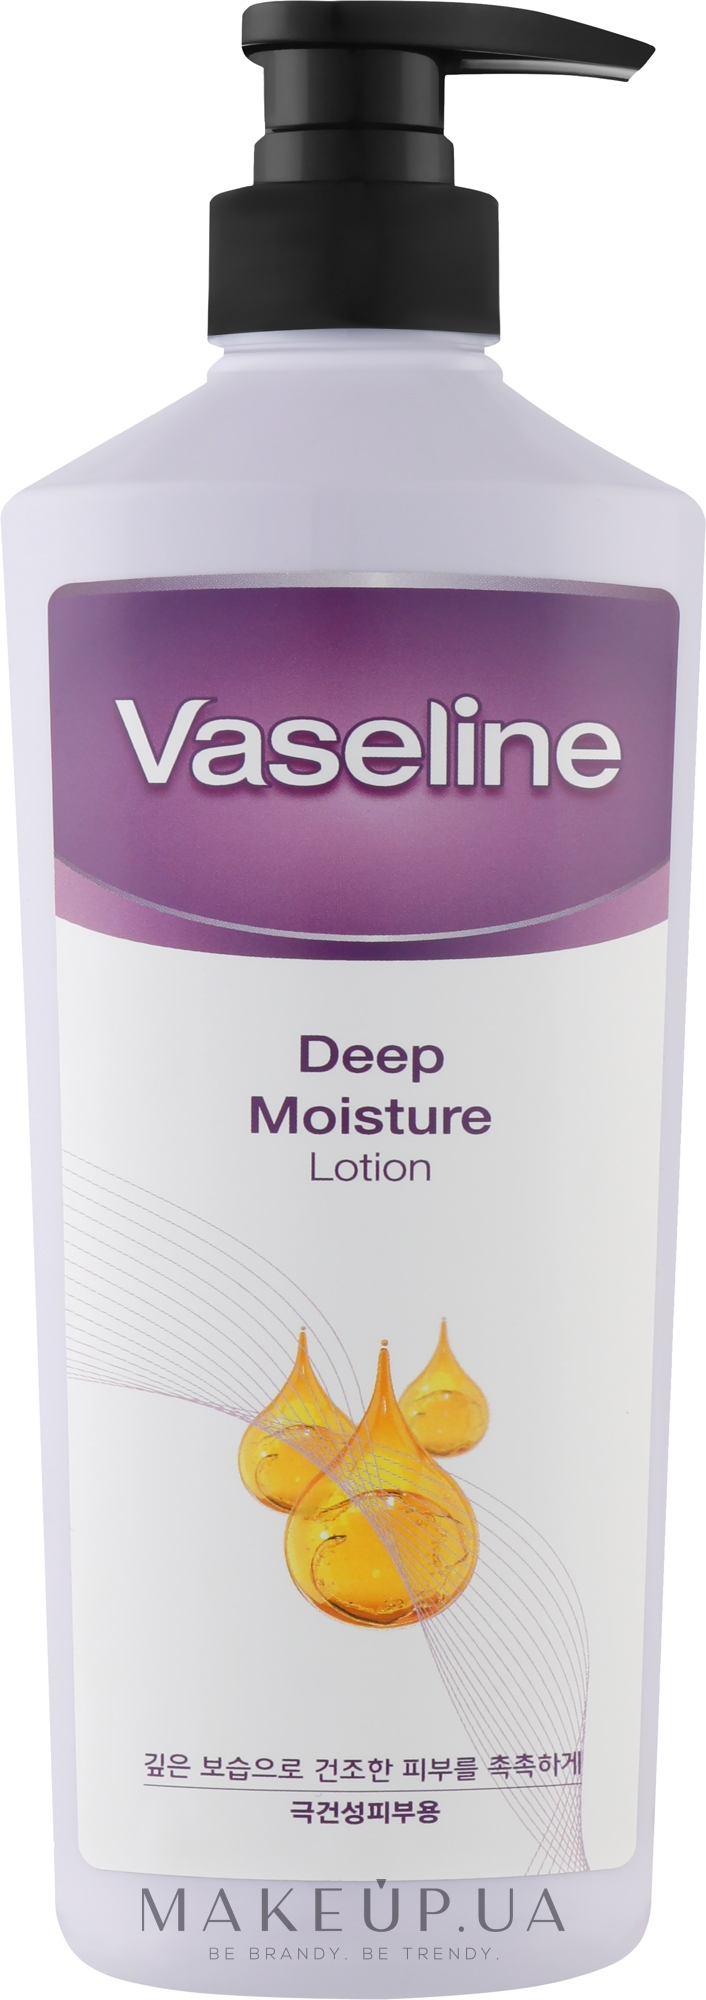 Живильний лосьйон для глибокого зволоження шкіри - Food A Holic Vaseline Deep Moisture Lotion — фото 500ml